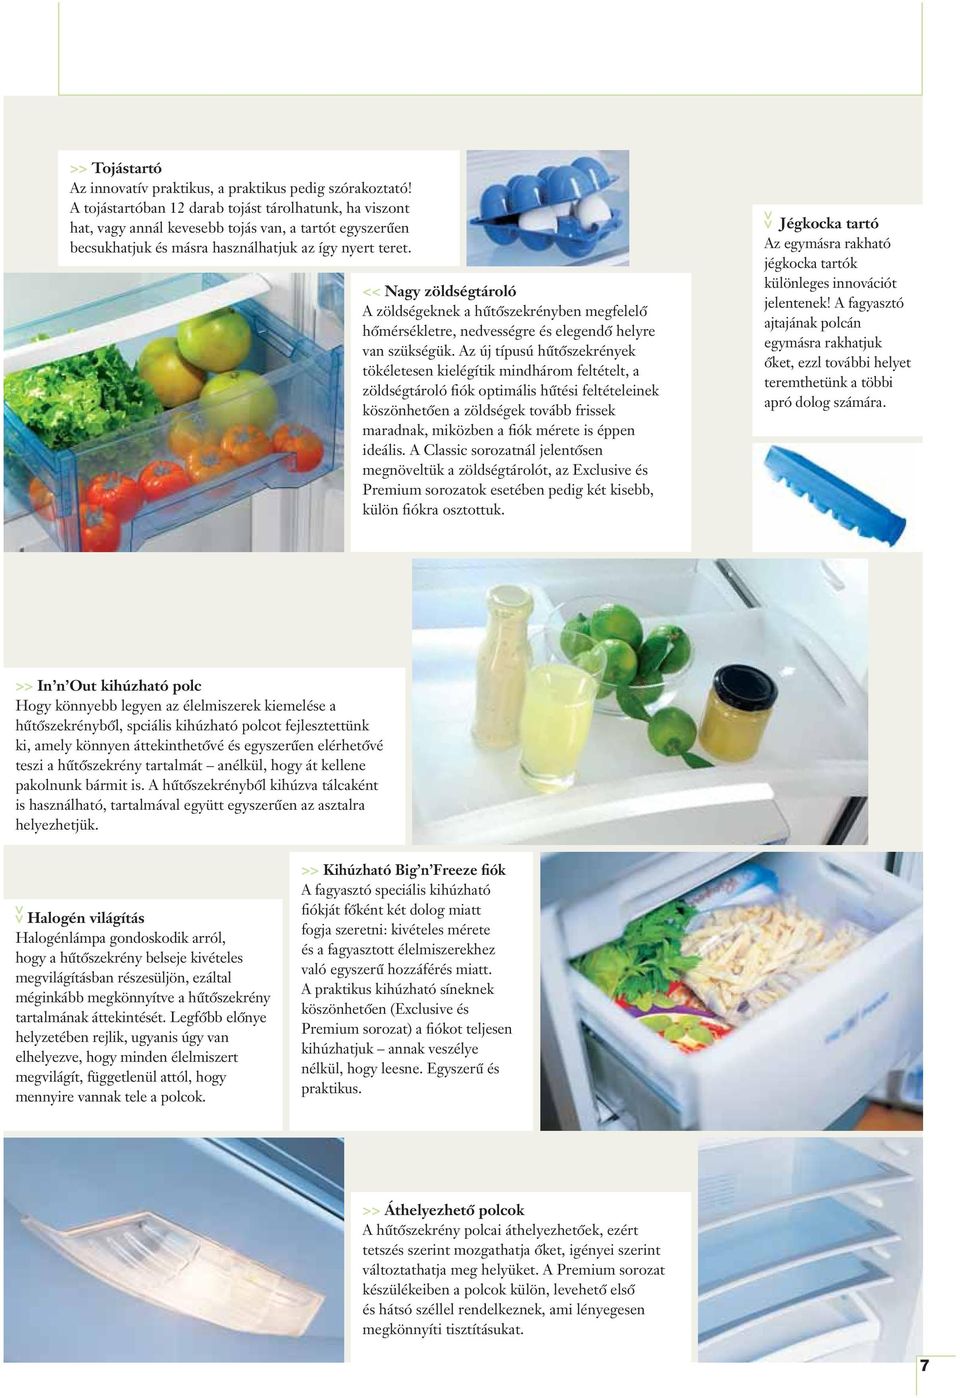 << Nagy zöldségtároló A zöldségeknek a hűtőszekrényben megfelelő hőmérsékletre, nedvességre és elegendő helyre van szükségük.